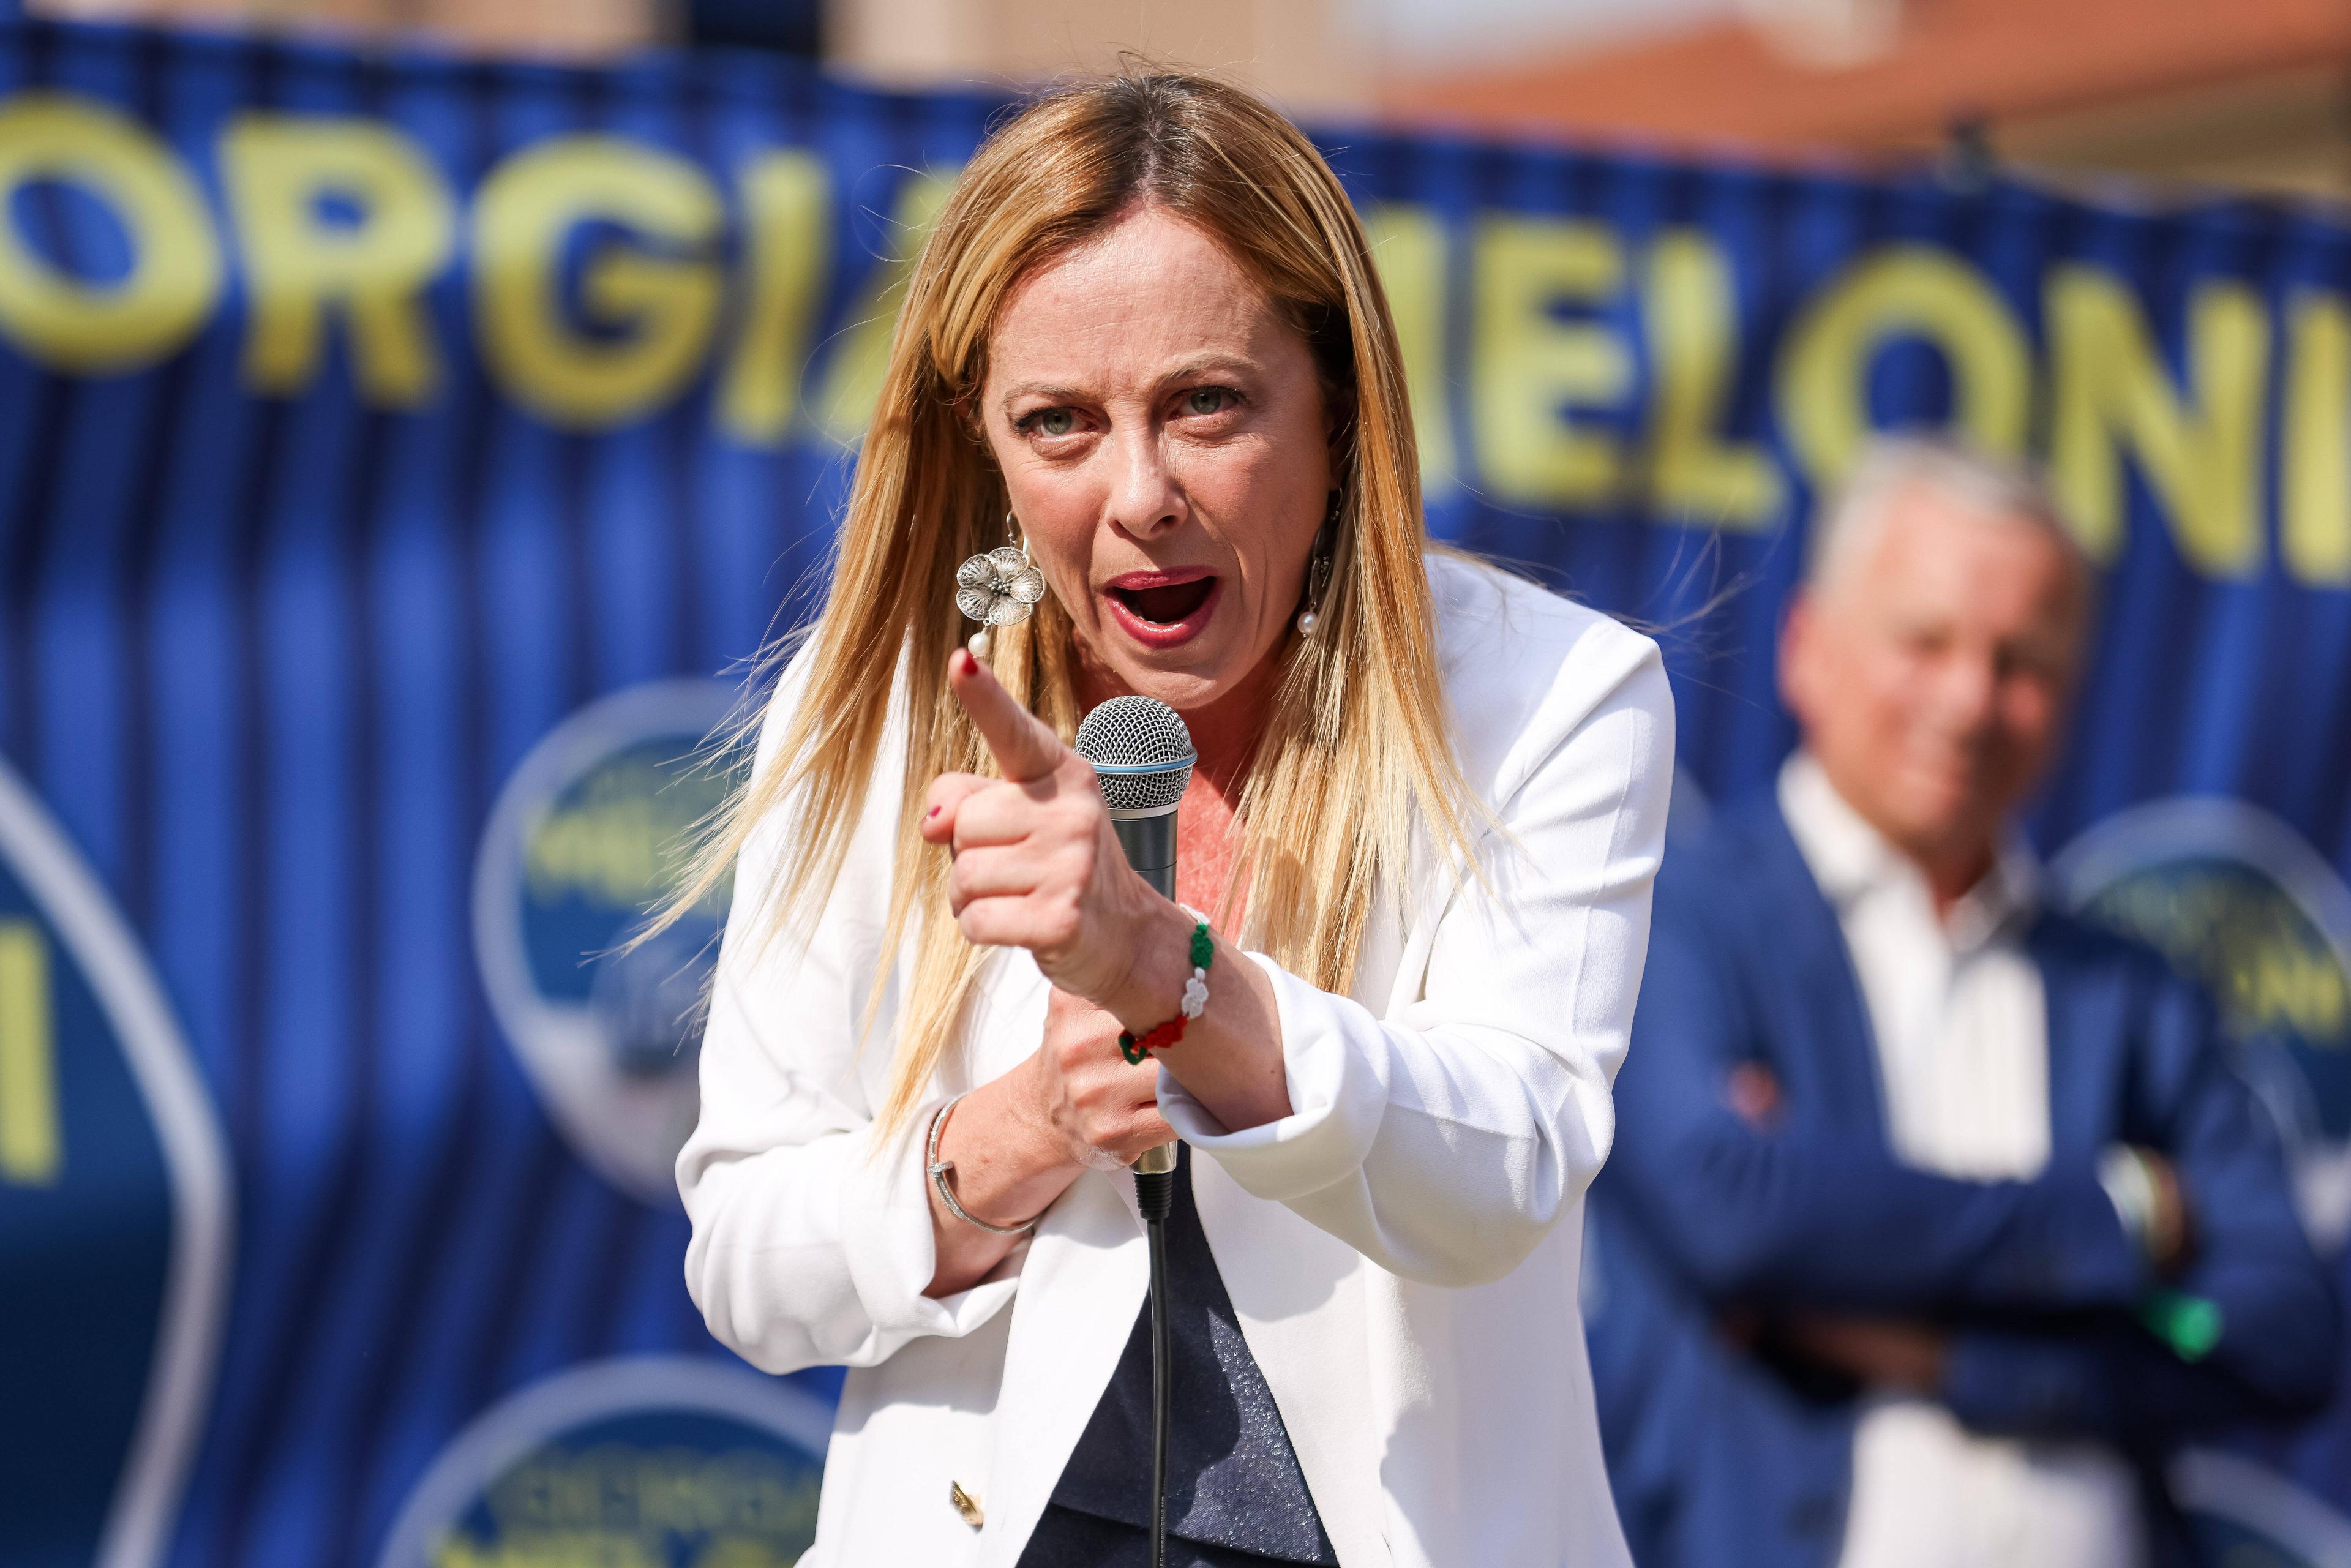 Giorgia Meloni von den rechtsextremen Fratelli d'Italia bei einer Wahlkampfveranstaltung in Monza, 30. Mai 2022.